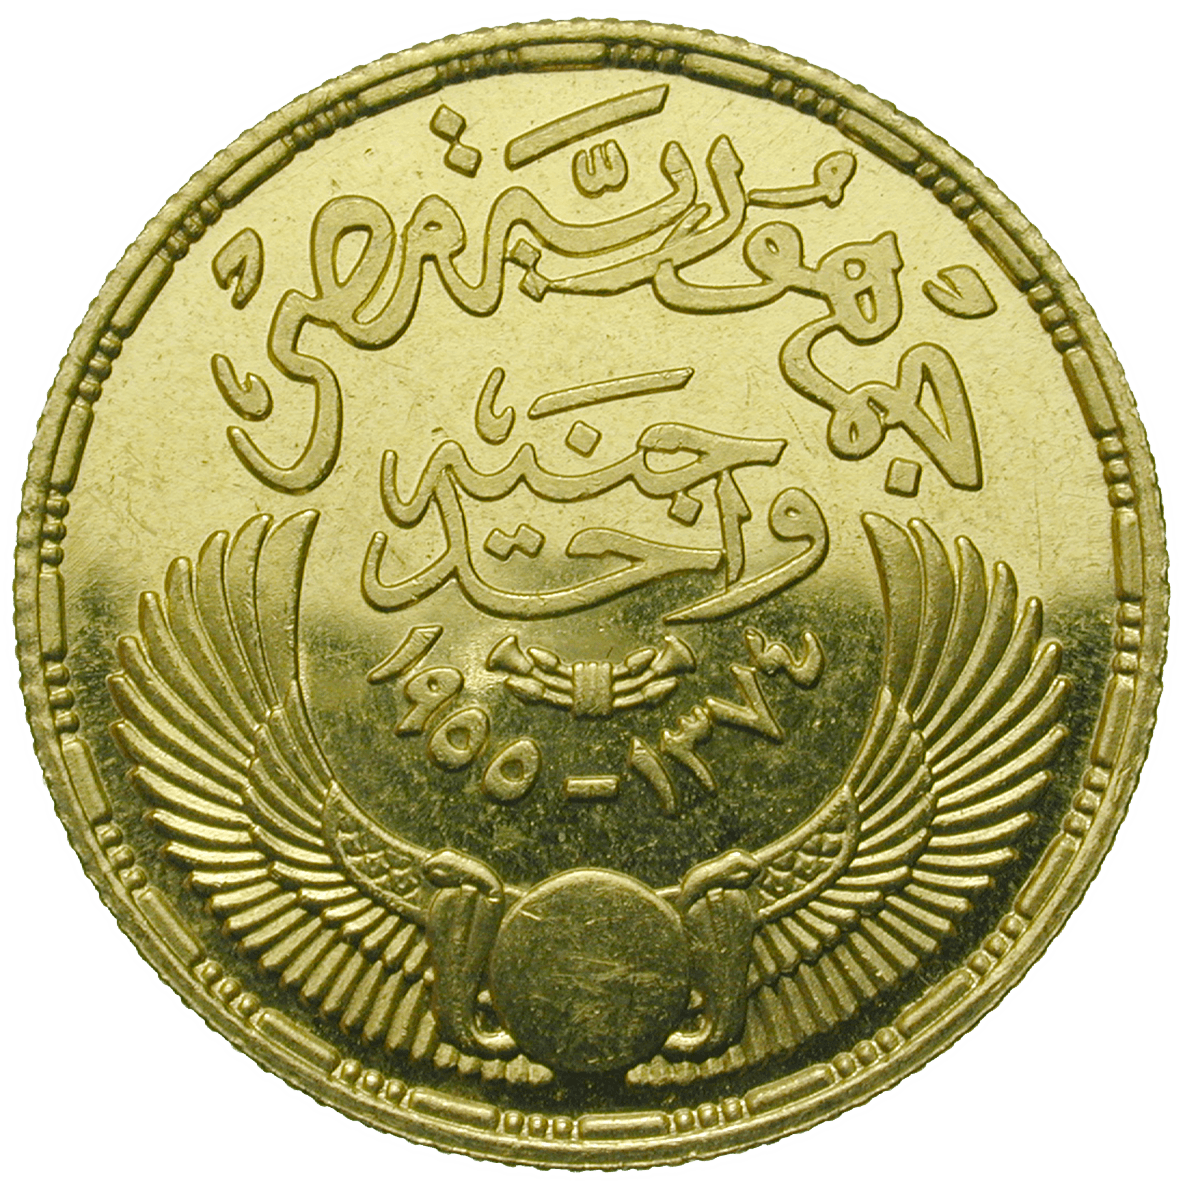 Republik Ägypten, 1 Pfund 1955 (obverse)